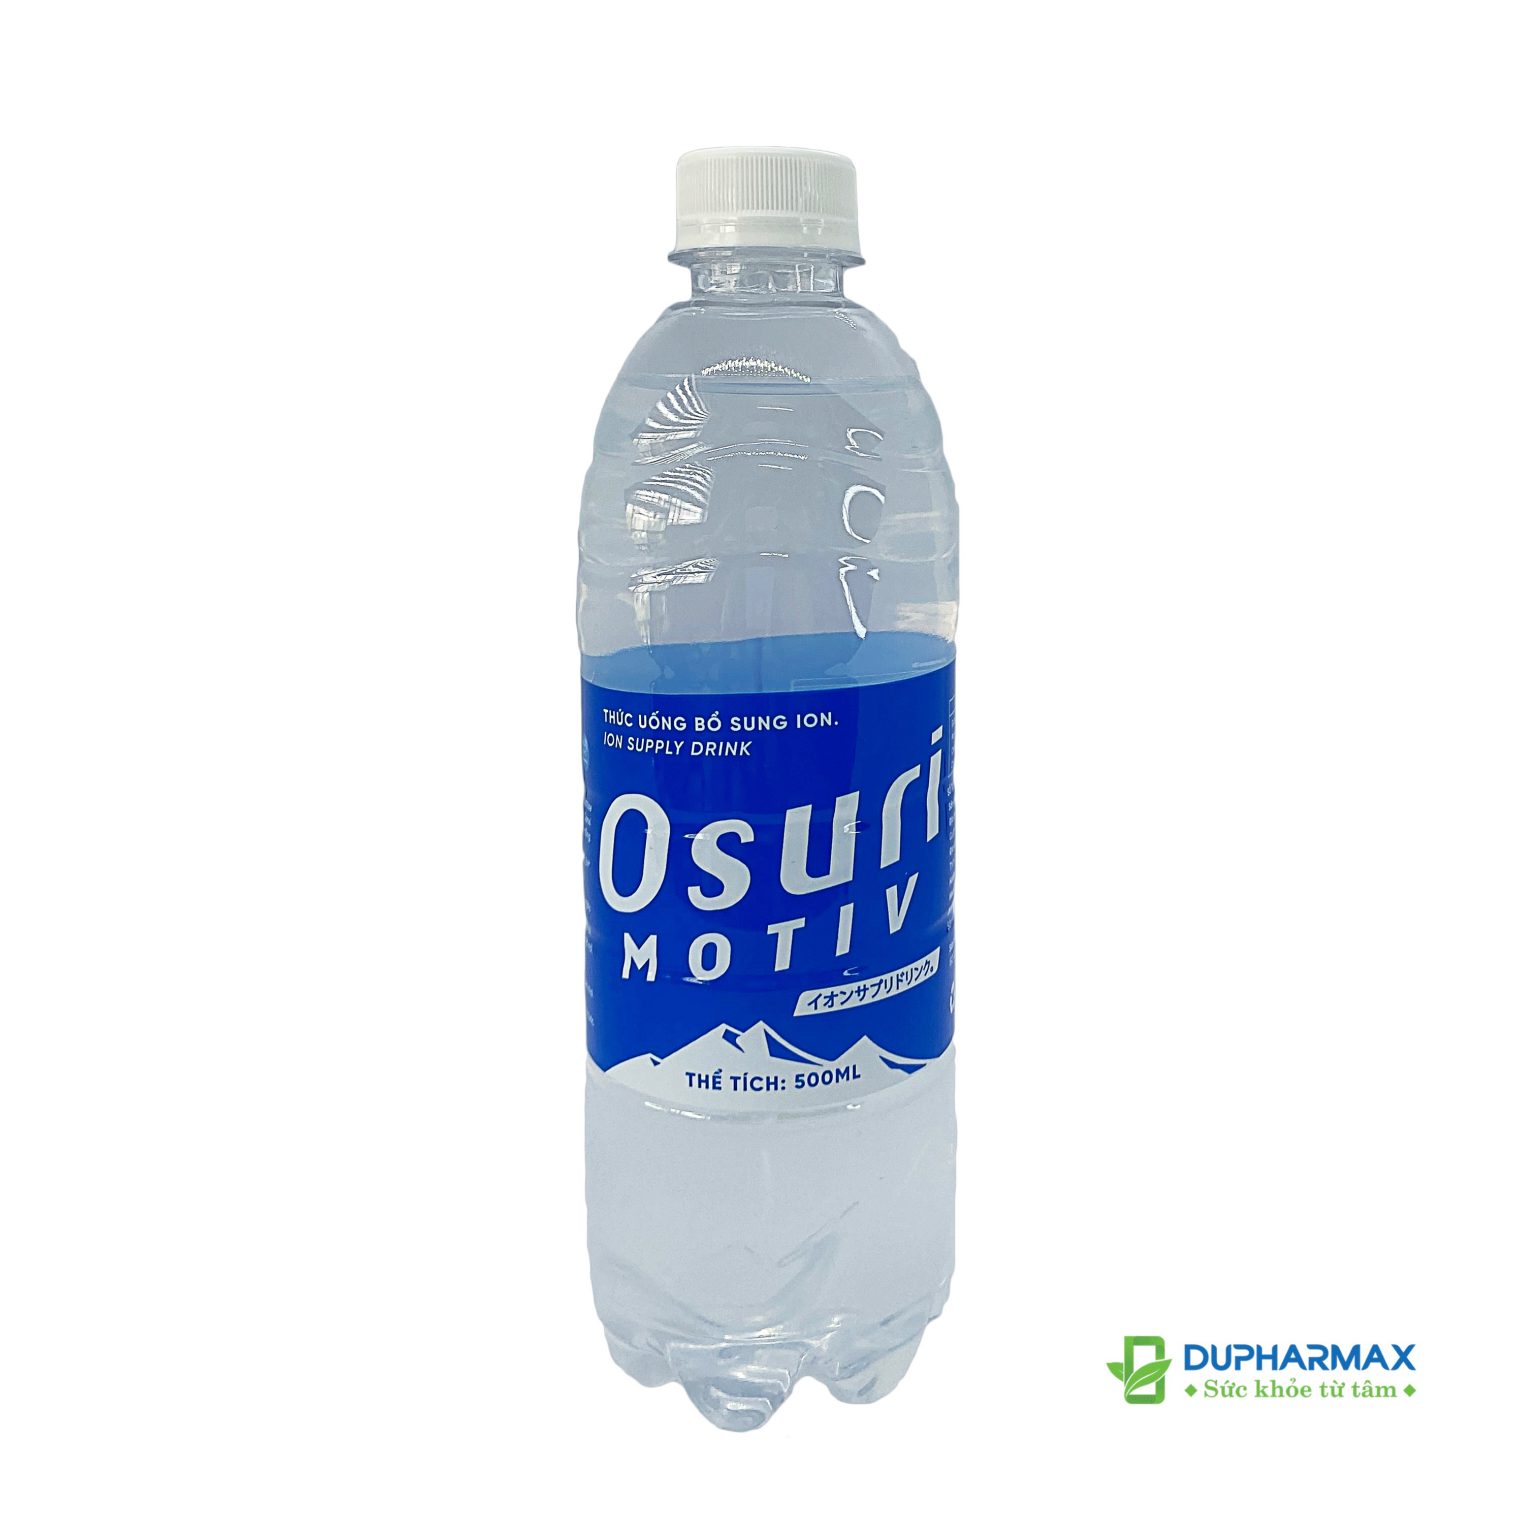 Bị sốt có nên dùng nước uống vận động Osuri